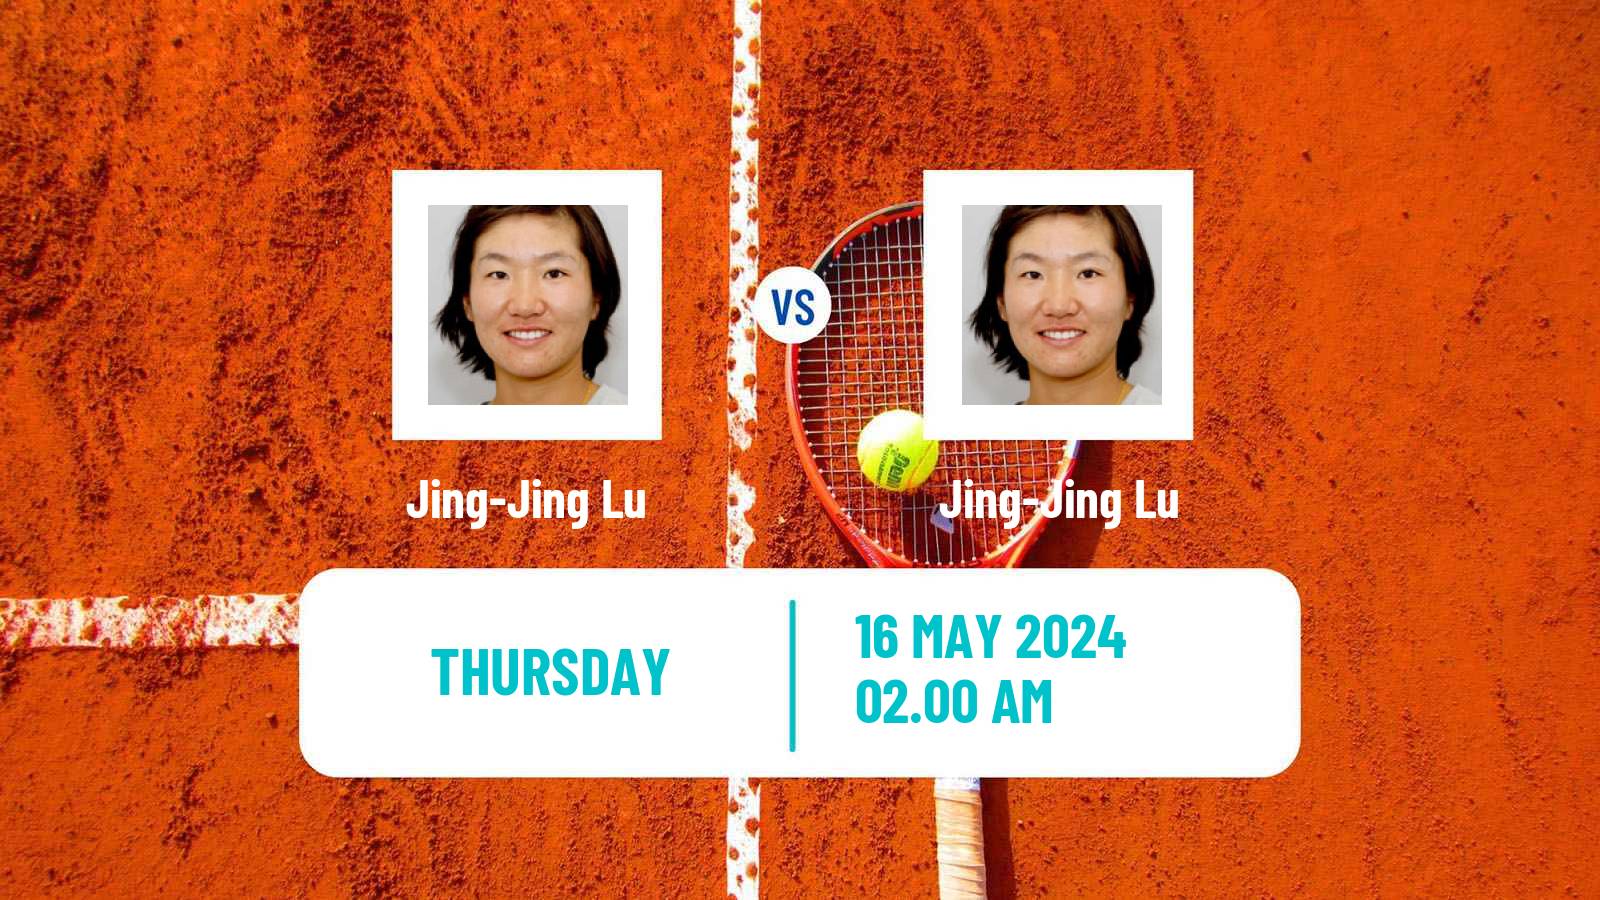 Tennis ITF W50 Anning Women Jing-Jing Lu - Jing-Jing Lu